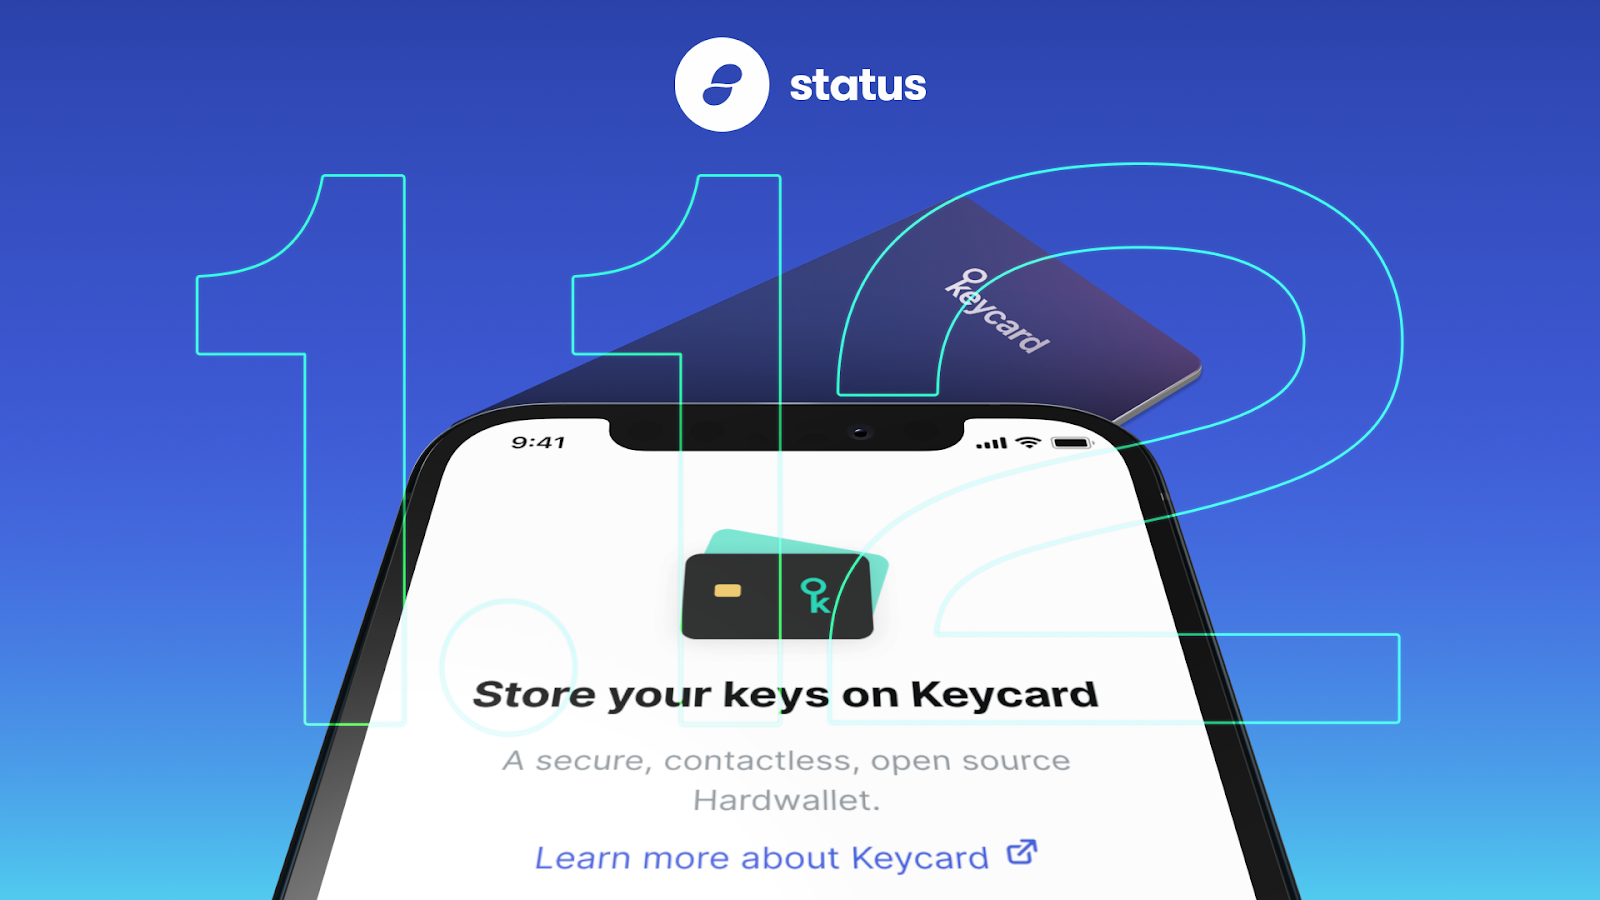 [官宣] Status 公布 V1.12 版本 - Keycard 支持 iOS 系统，加密货币买卖